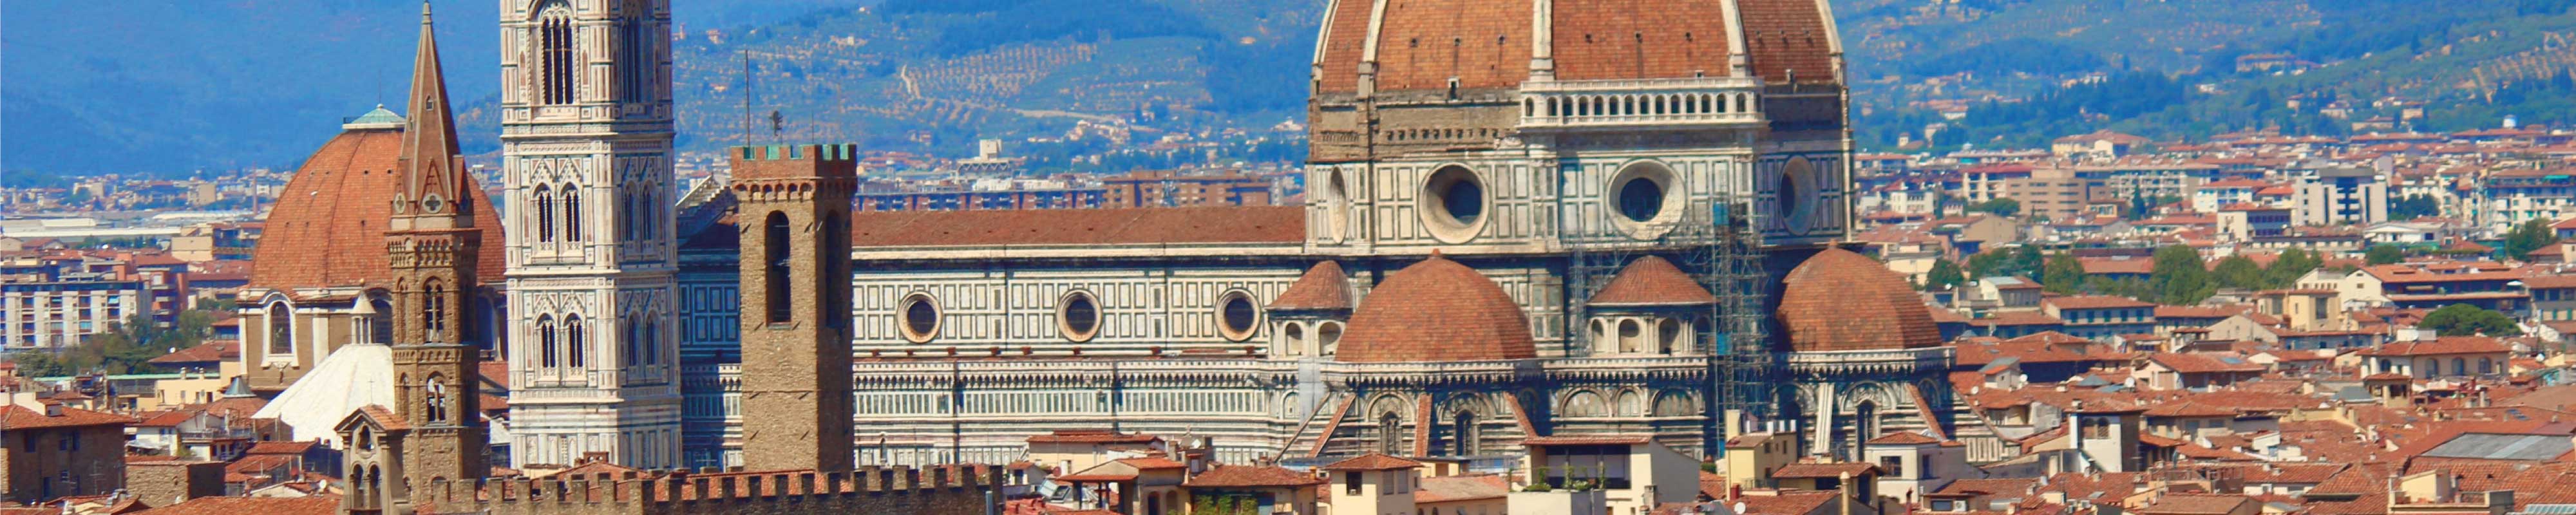 Consigna Equipaje | Duomo Santa Maria del Fiore en Florencia - Nannybag